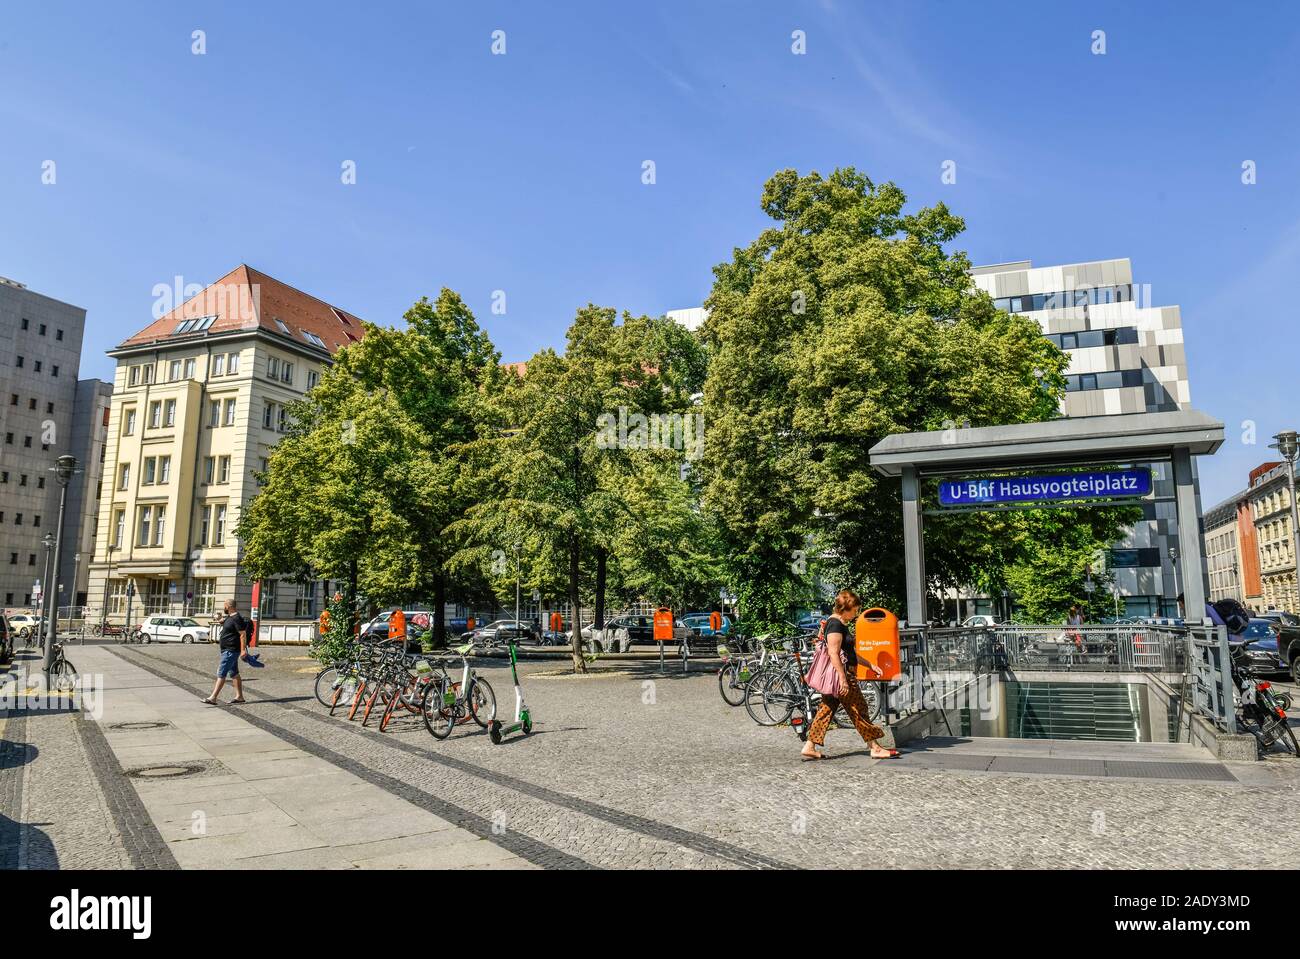 Hausvogteiplatz, Mitte, Berlin, Deutschland Stock Photo